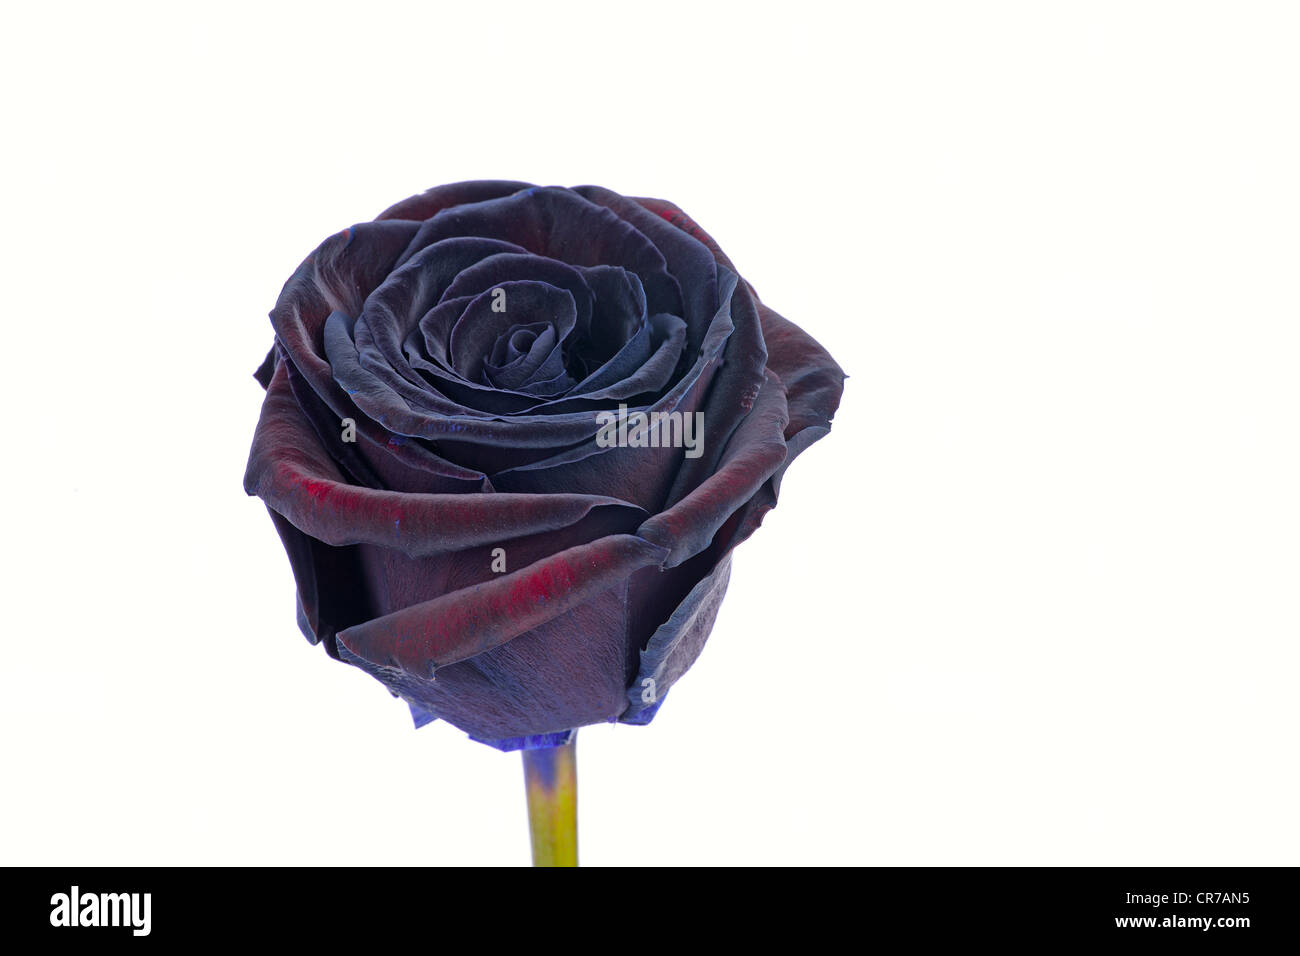 Rosa nera immagini e fotografie stock ad alta risoluzione - Alamy